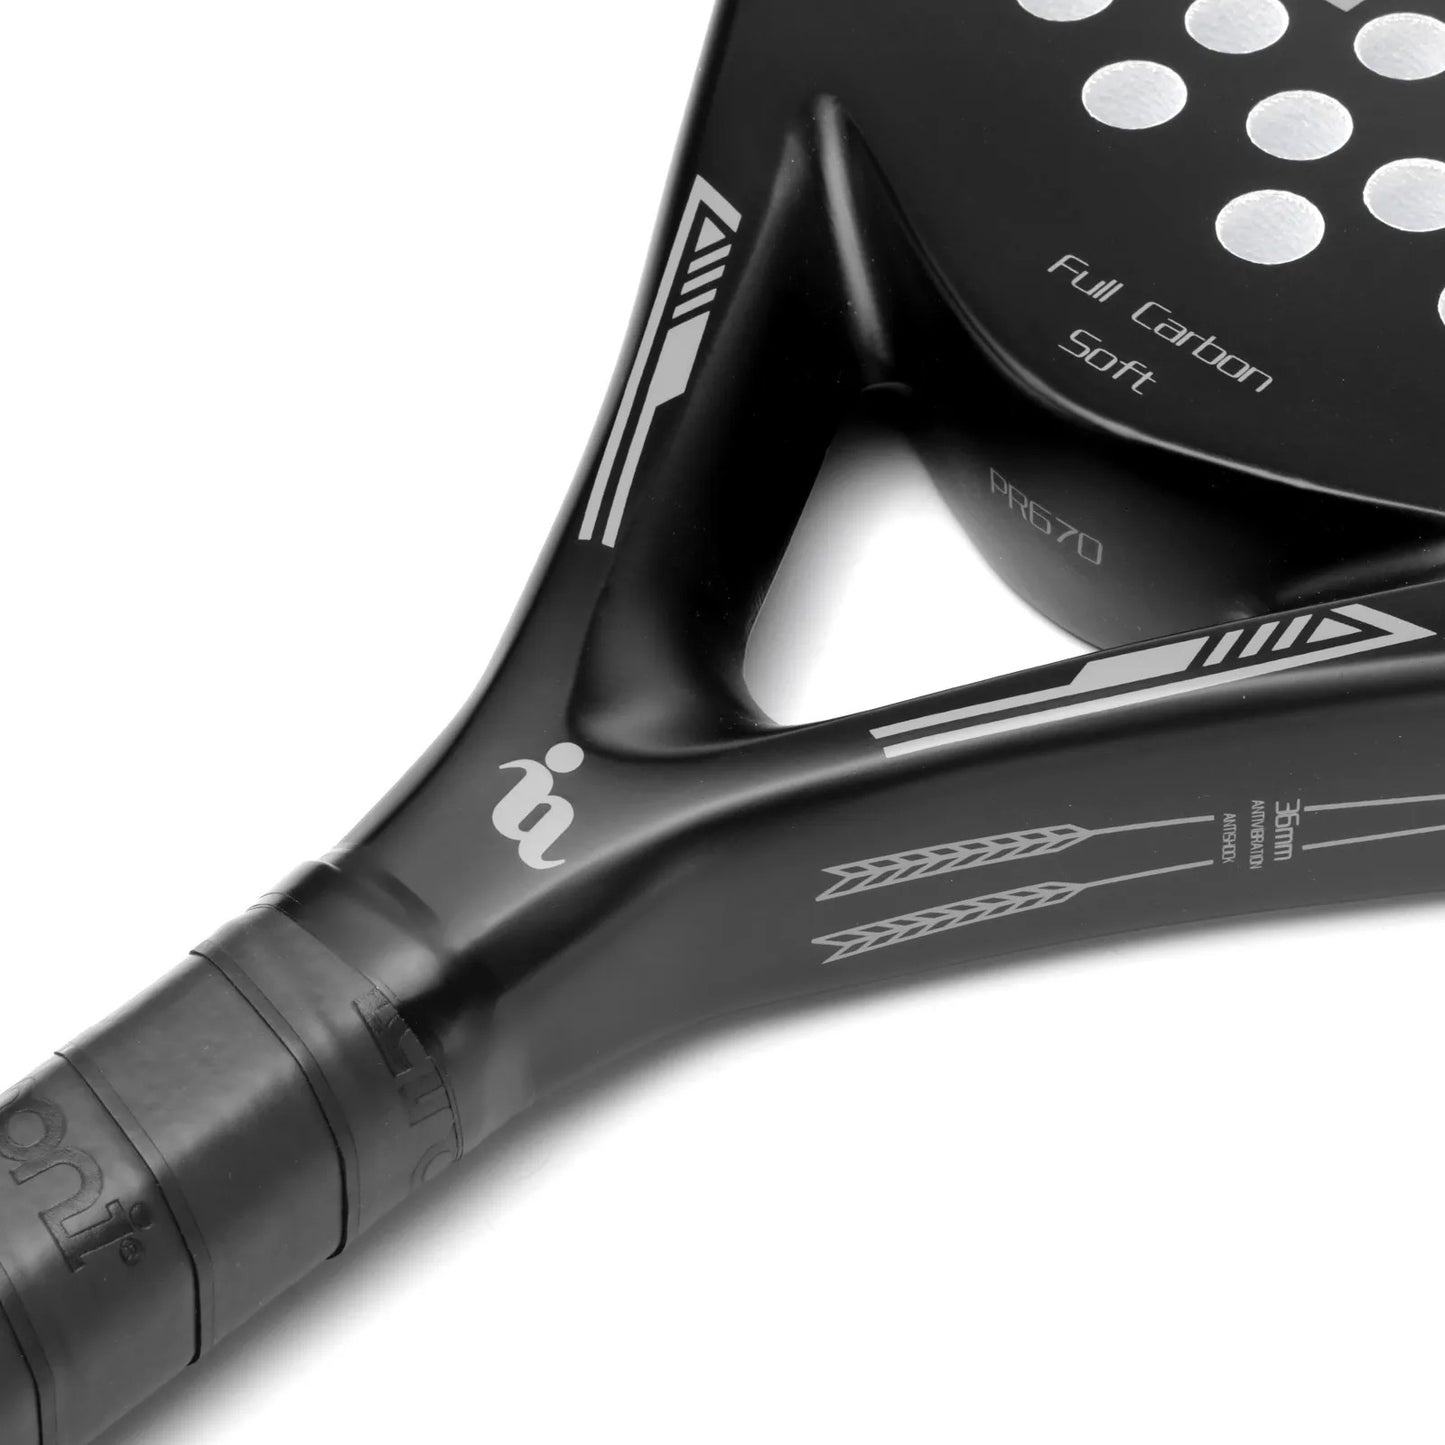 Carbon Fiber Paddle Tennis Racquet